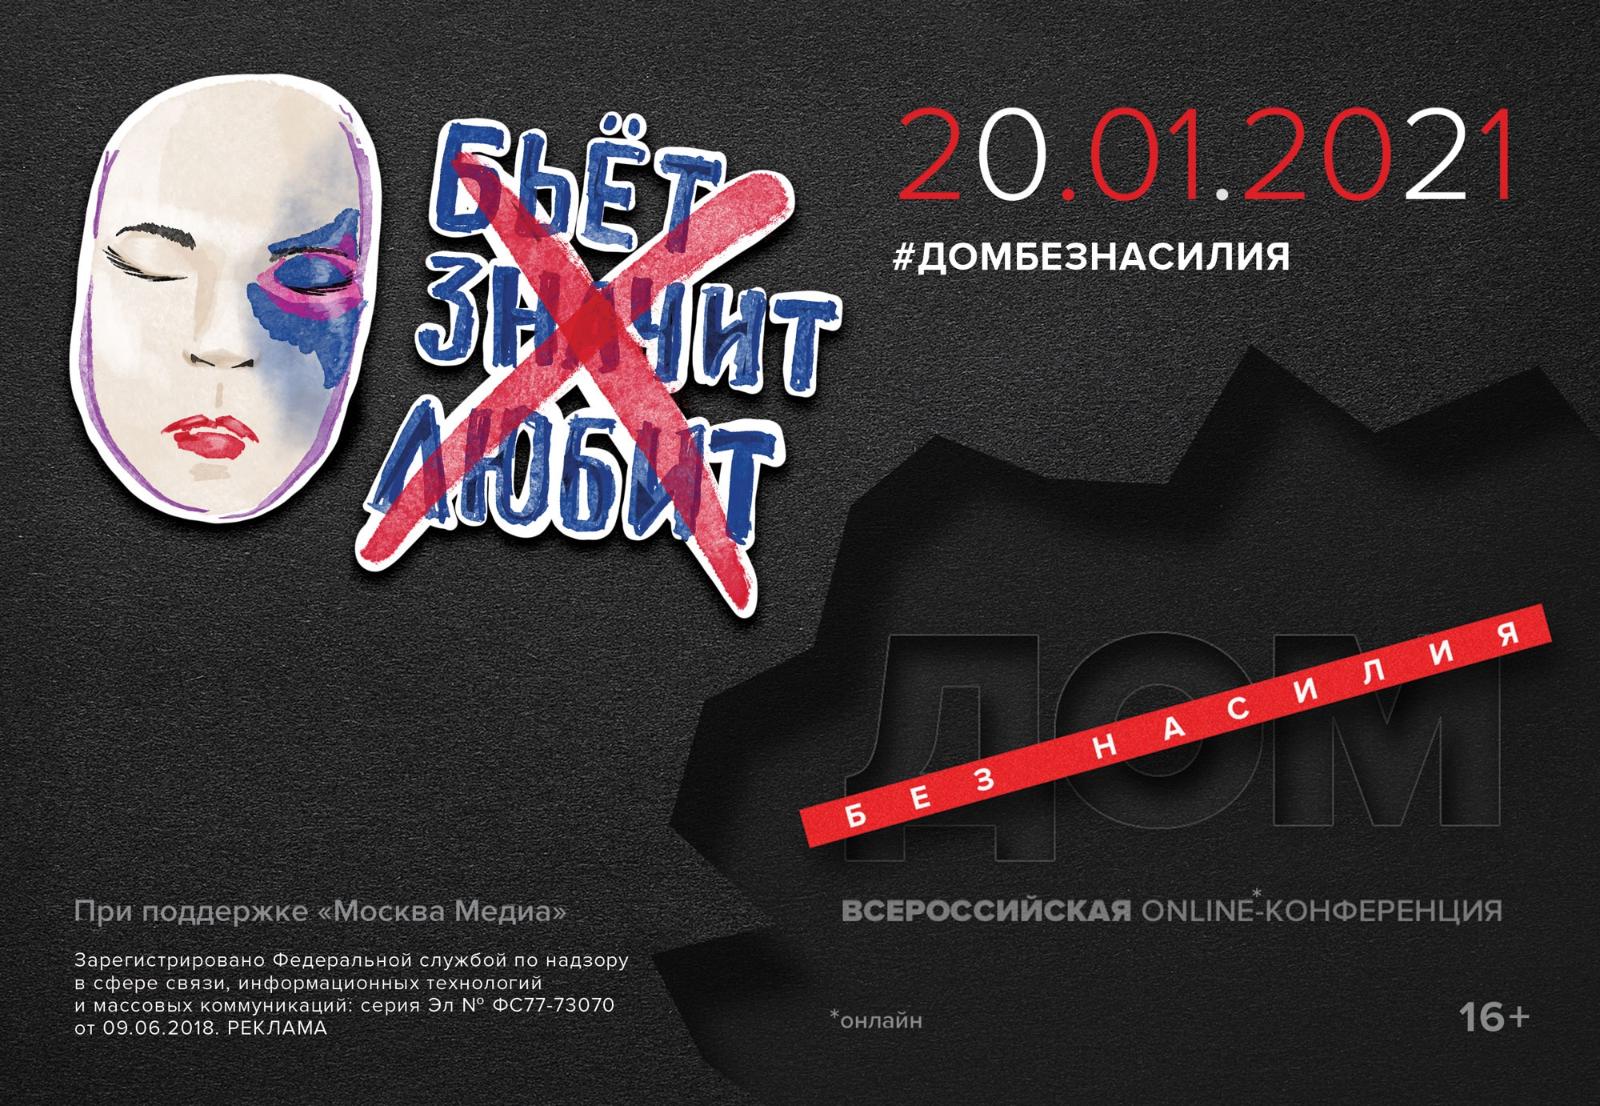 Москва 24 проведет онлайн-конференцию, посвященную теме домашнего насилия